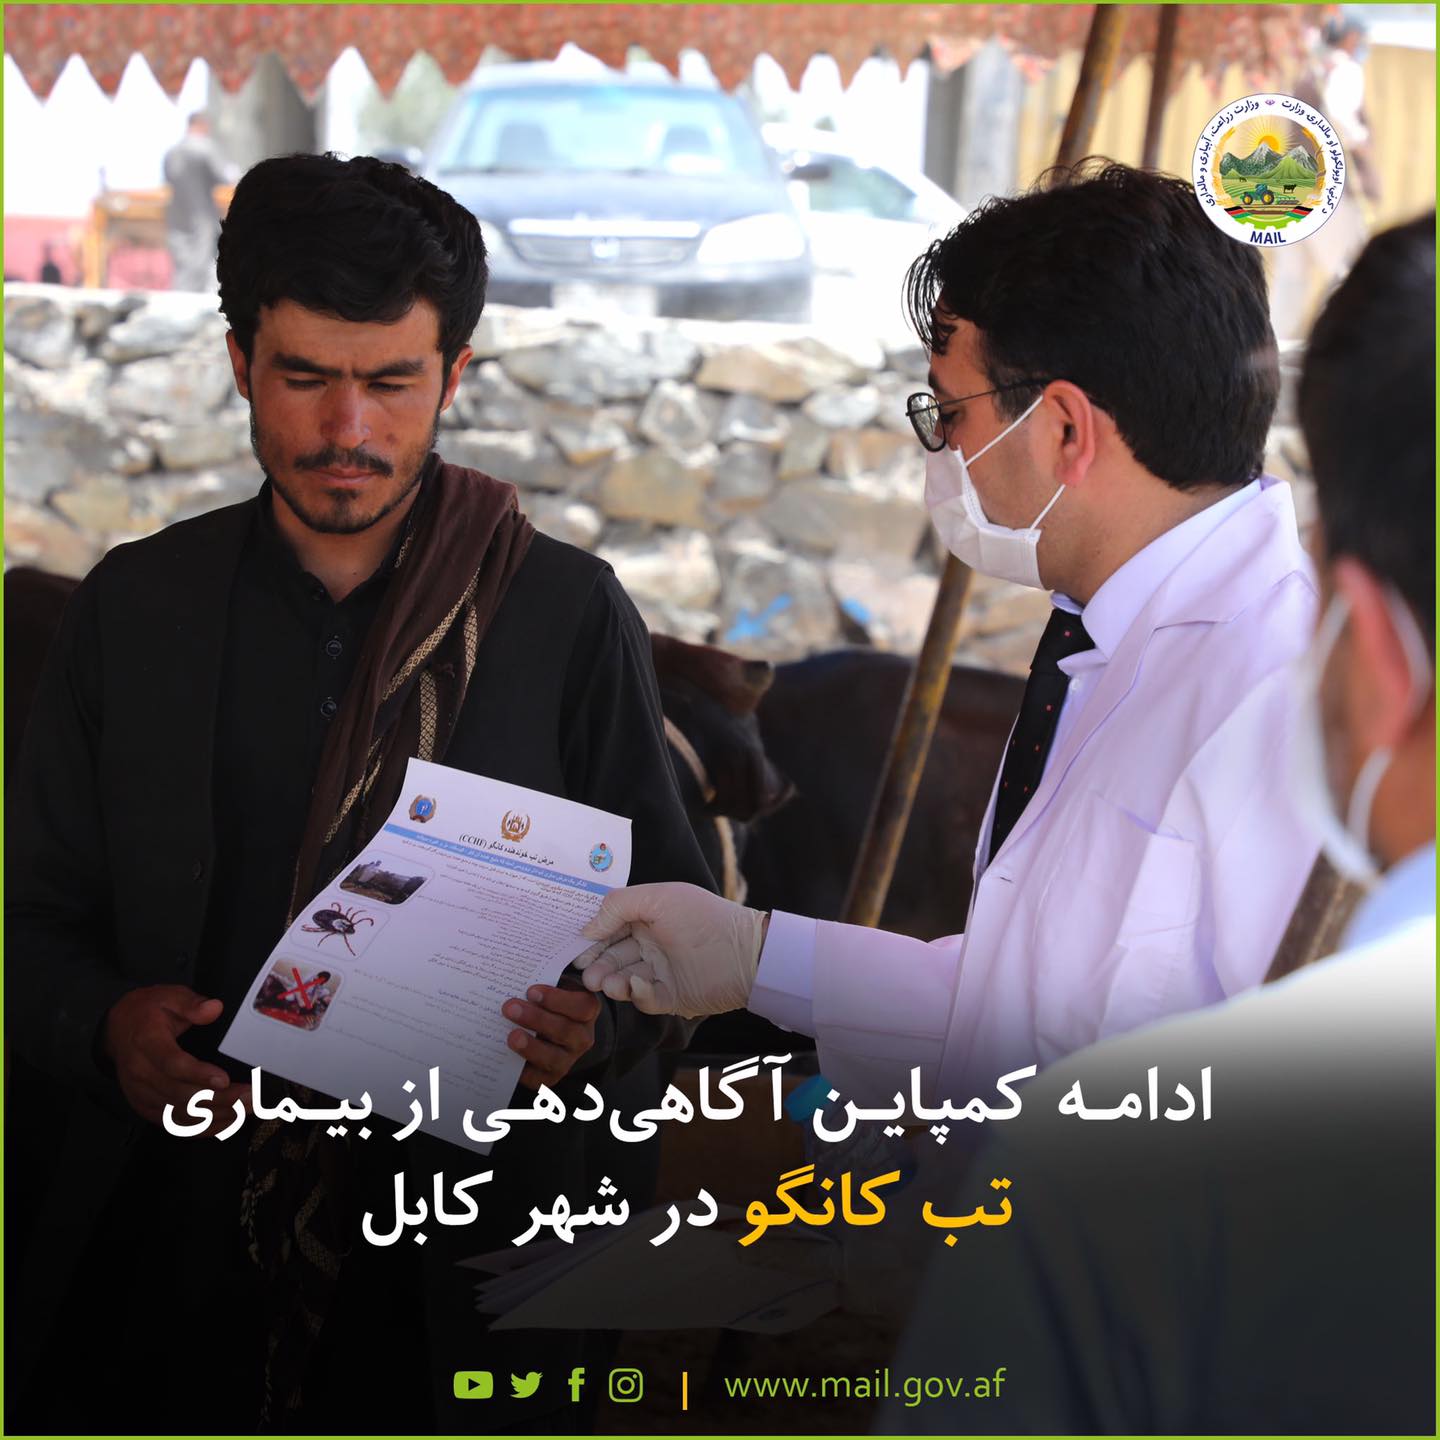 ادامه‌ کمپاین آگاهی‌دهی از بیماری تب کانگو در شهر کابل